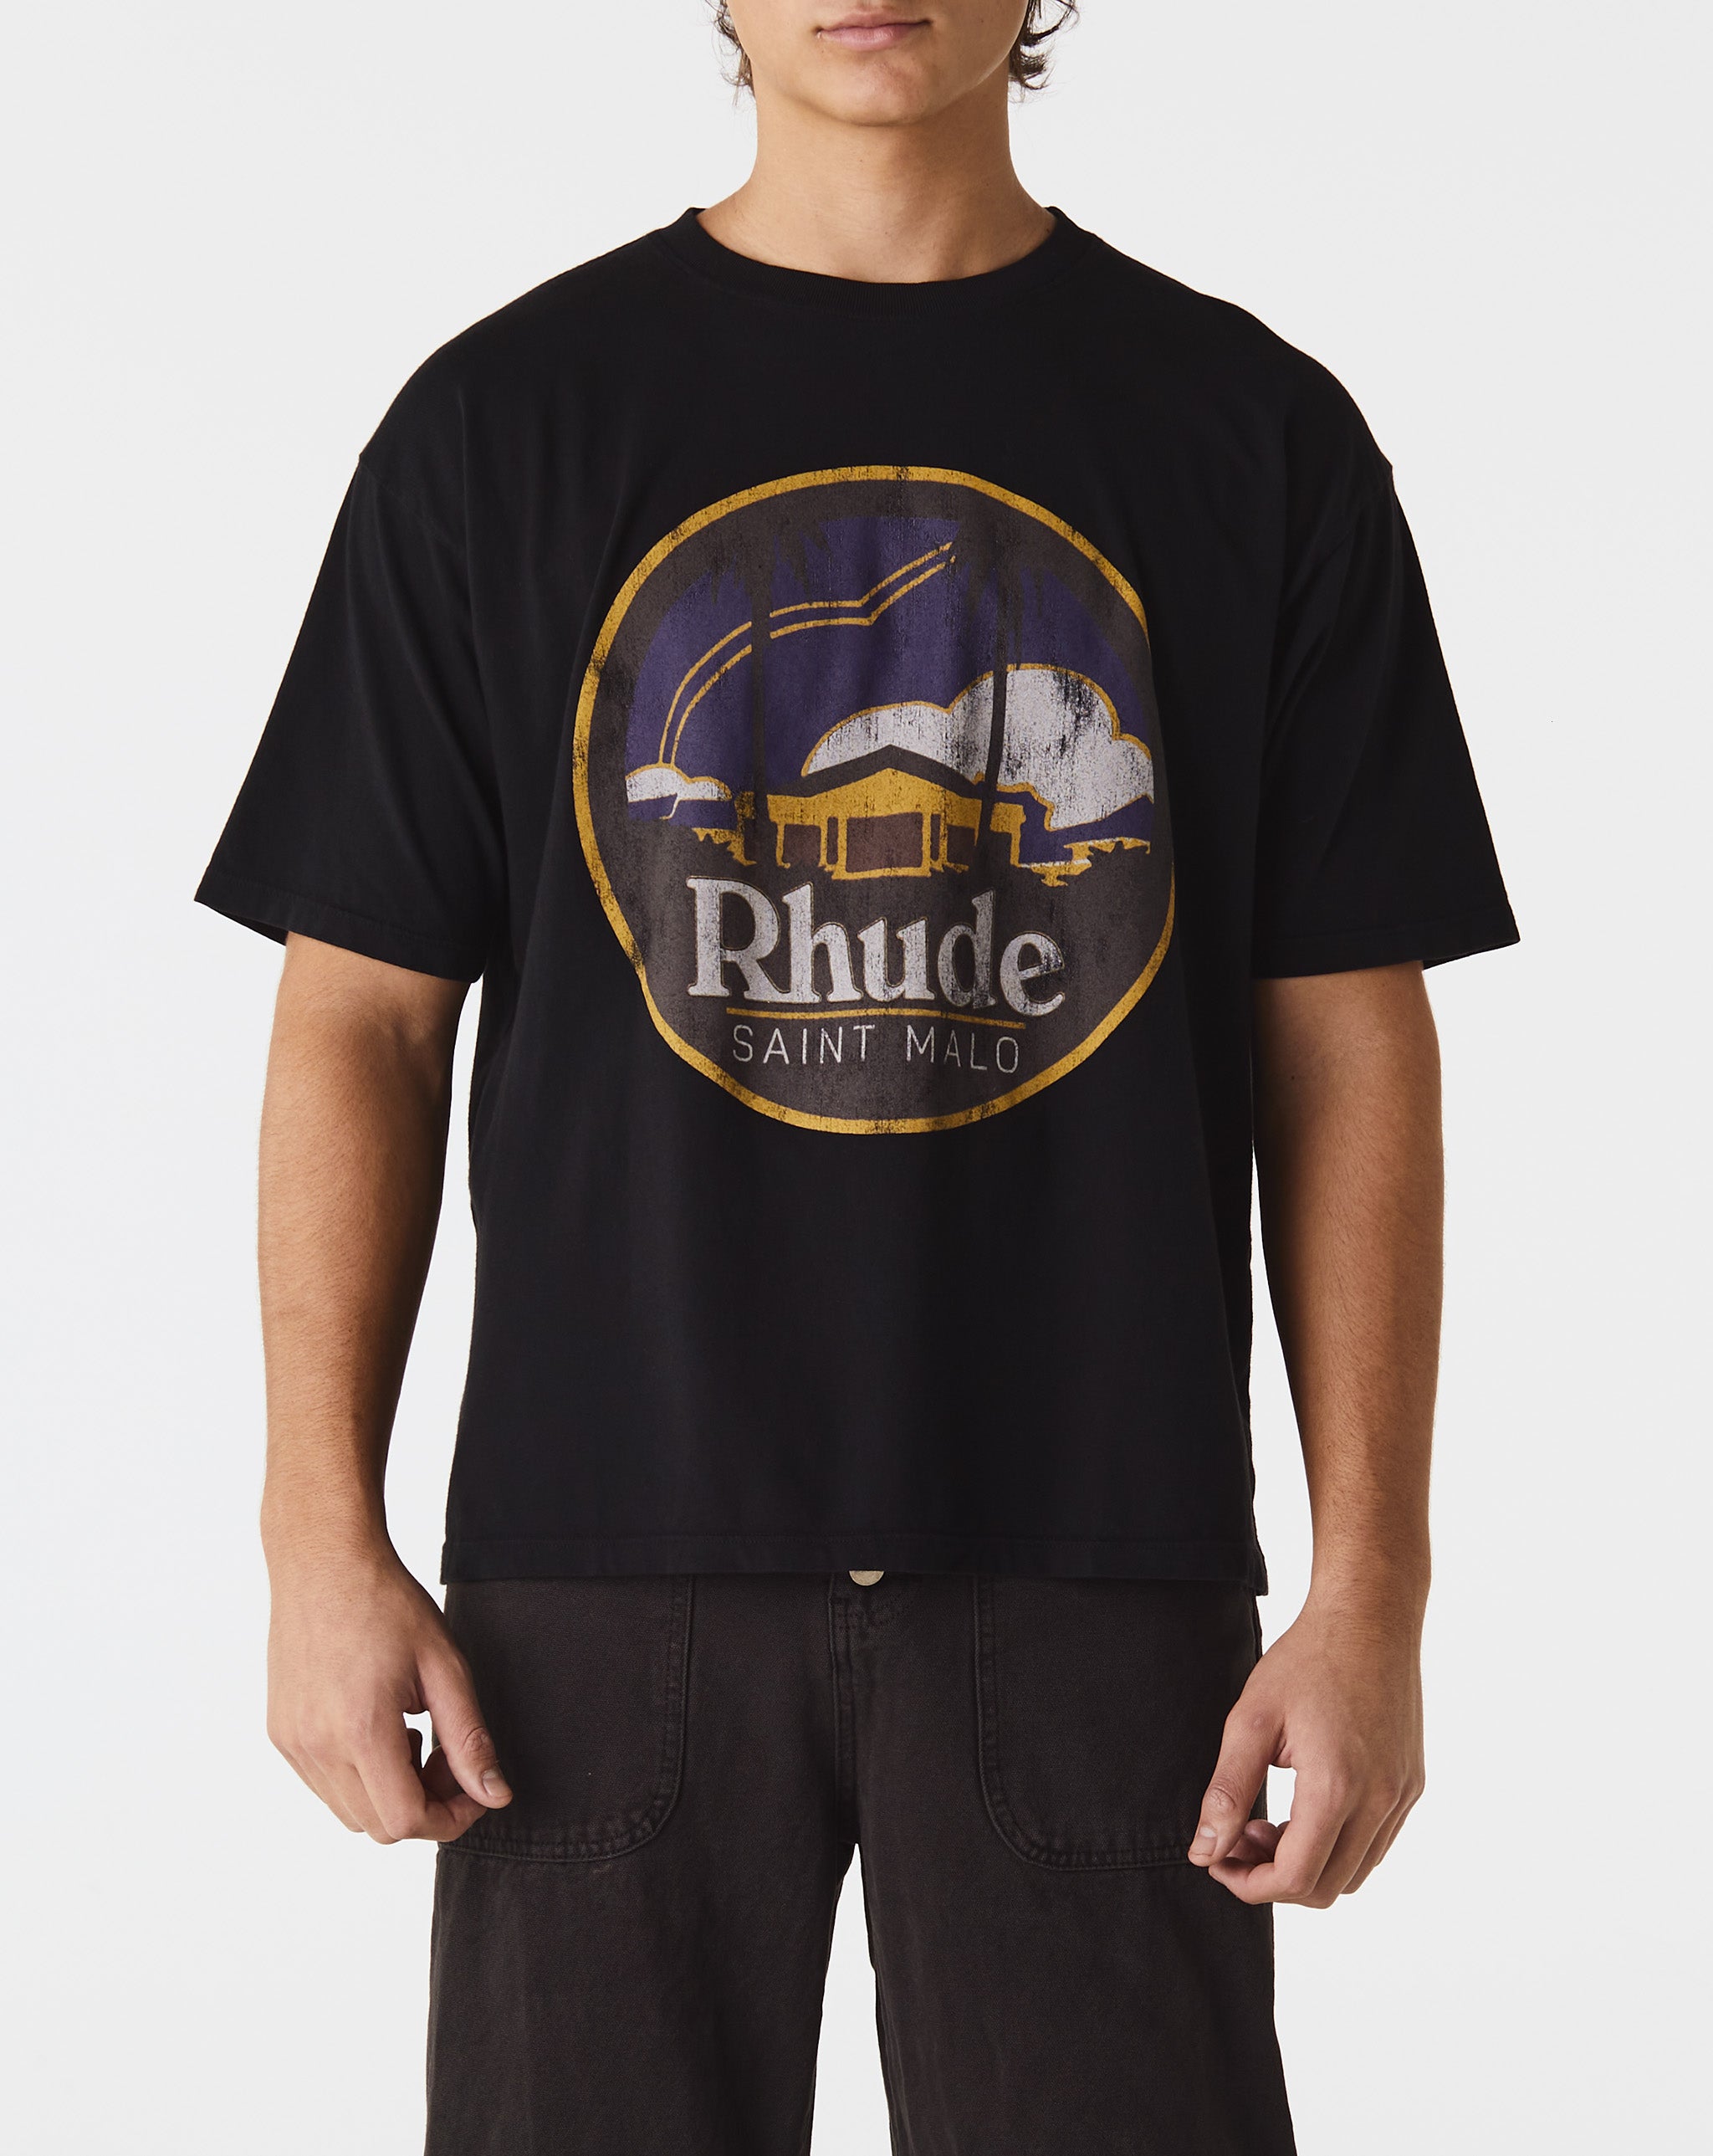 Rhude Saint Malo T-Shirt  - Cheap Urlfreeze Jordan outlet